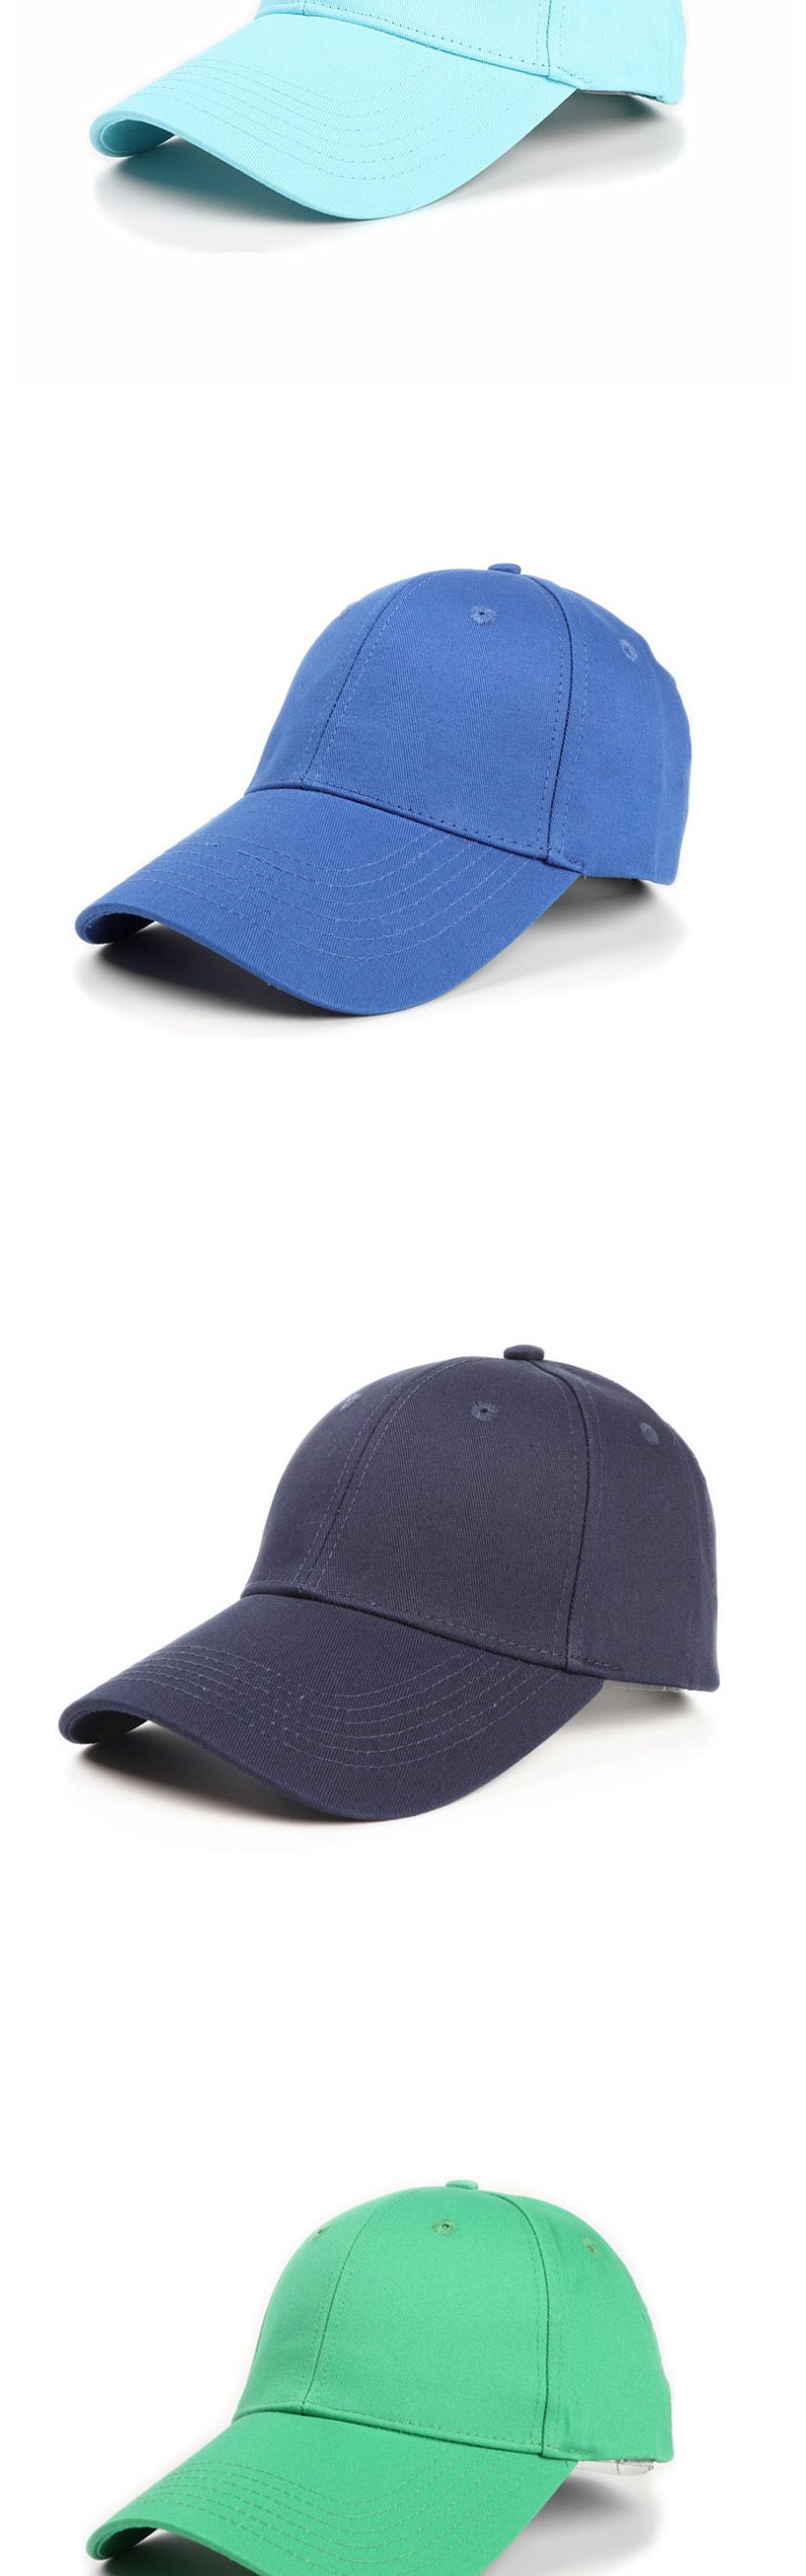 Fashion Navy Cotton Hard Top And Long Brim Baseball Cap,Baseball Caps